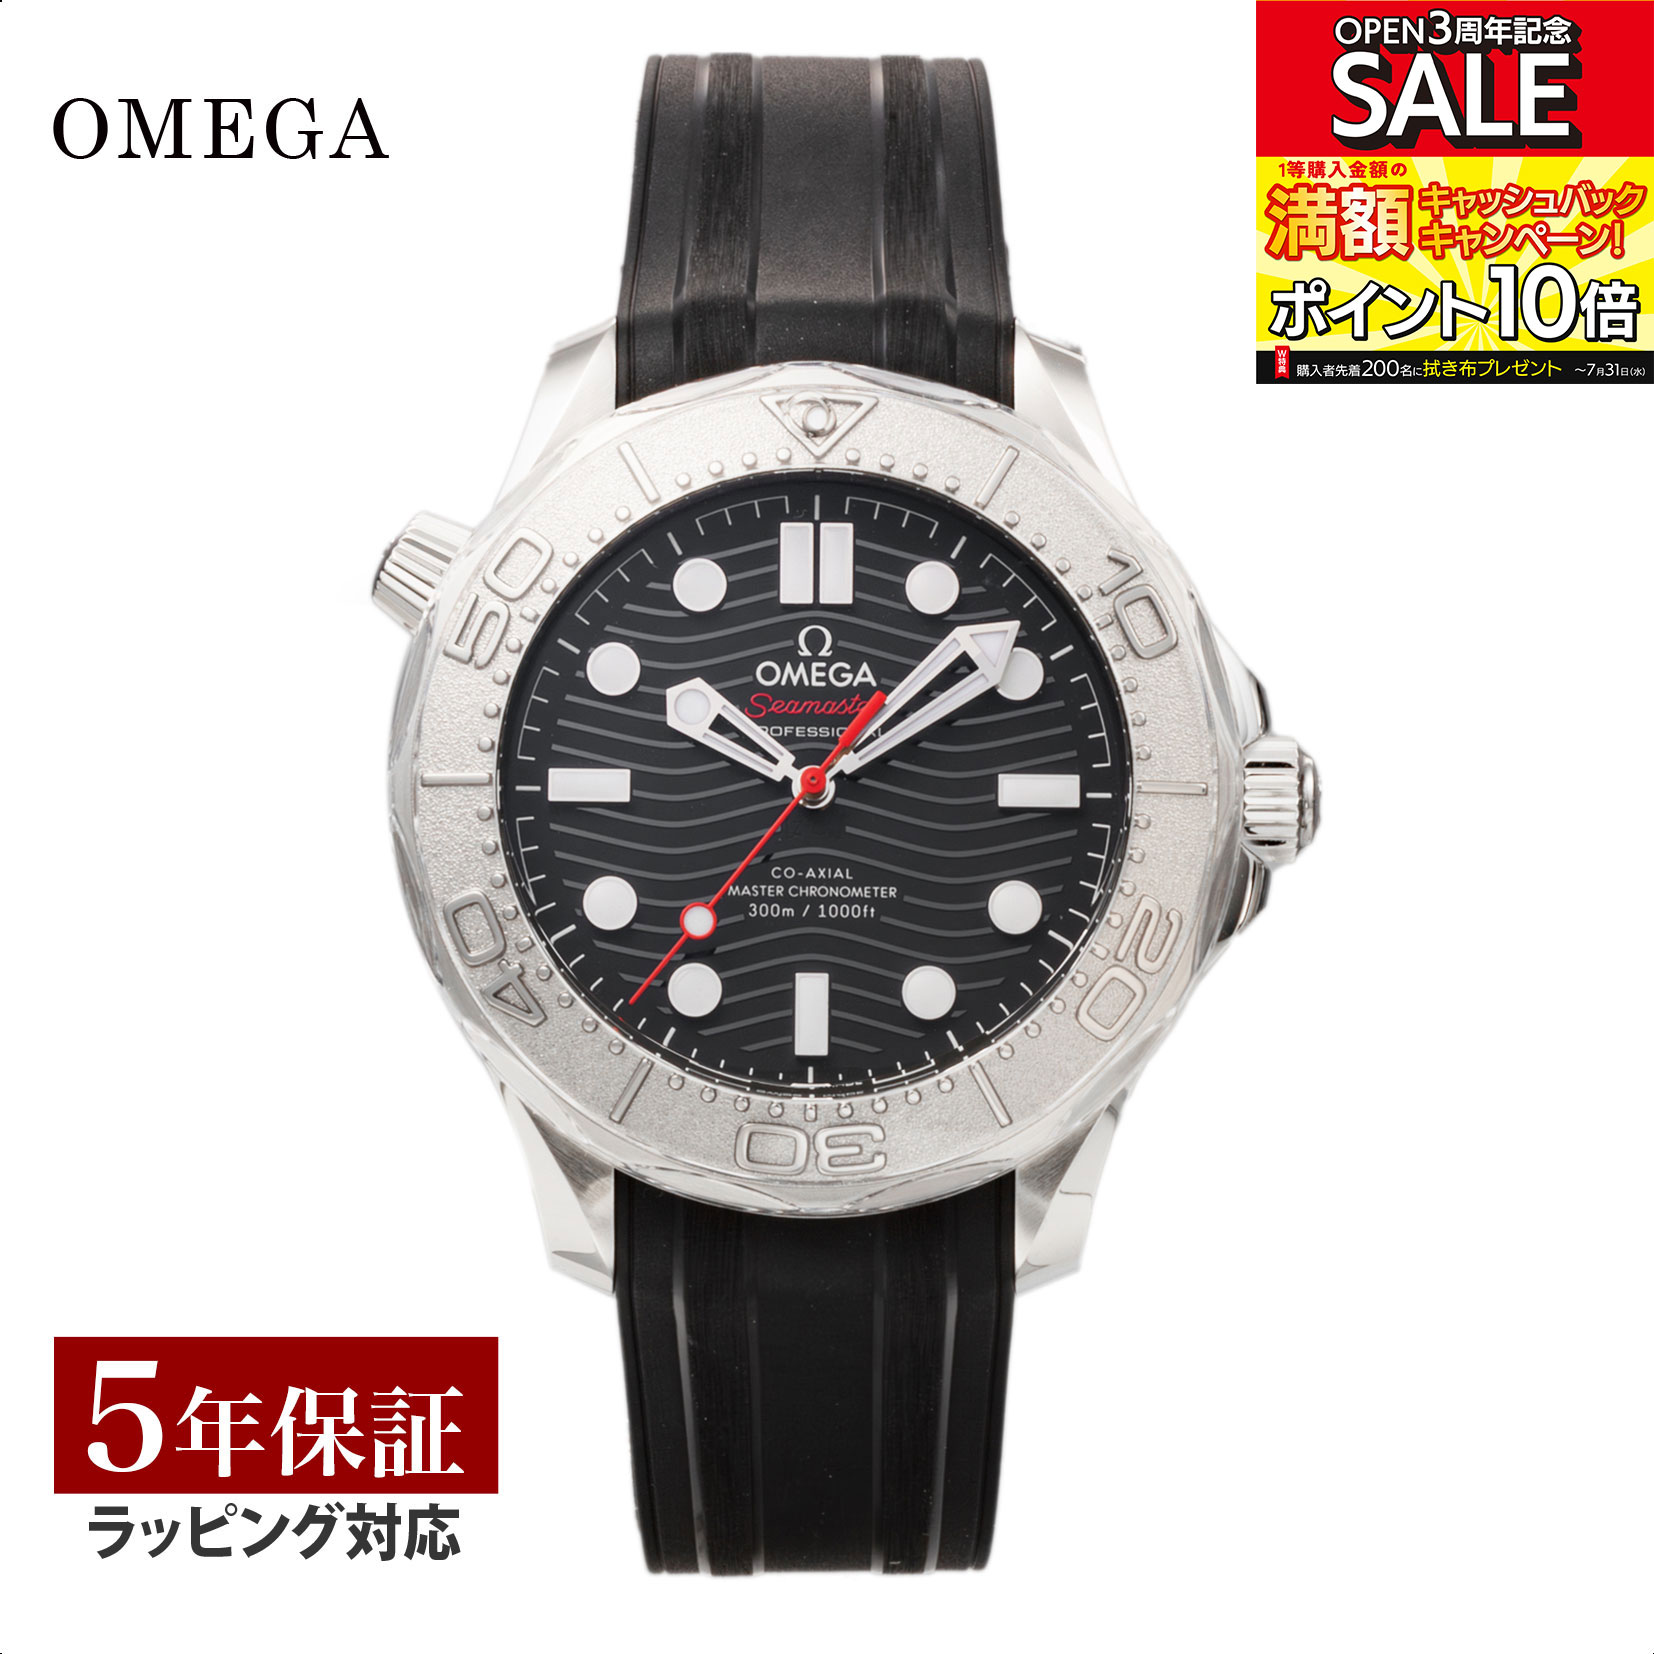 オメガ シーマスター 腕時計（メンズ） オメガ OMEGA メンズ 時計 シーマスター ダイバー 300M Seamaster Diver 300M コーアクシャル自動巻 ブラック 210.32.42.20.01.002 腕時計 高級腕時計 ブランド